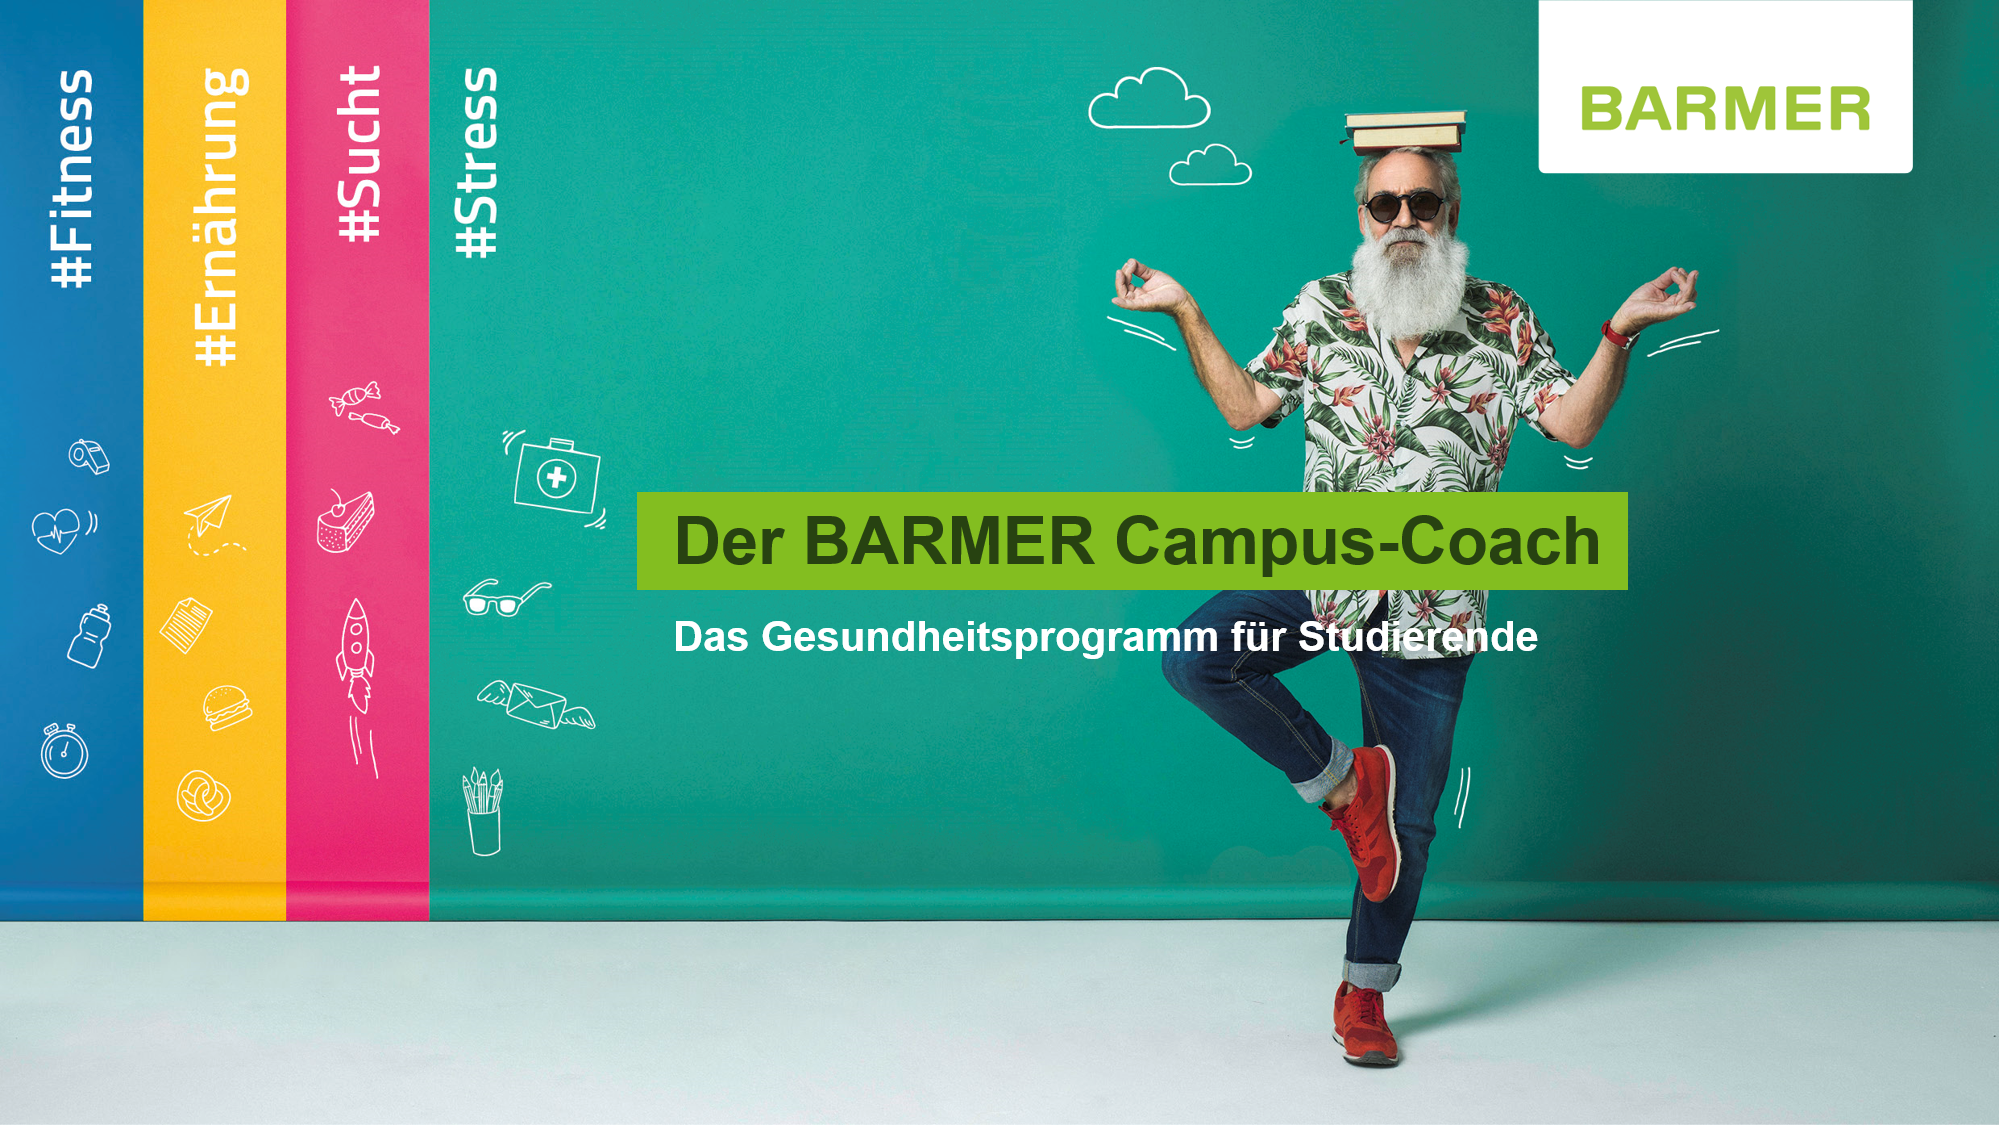 Illustration mit dem Barmer Campus-Coach "Eddi". "Eddi“ trägt Rauschebart und Sneaker.